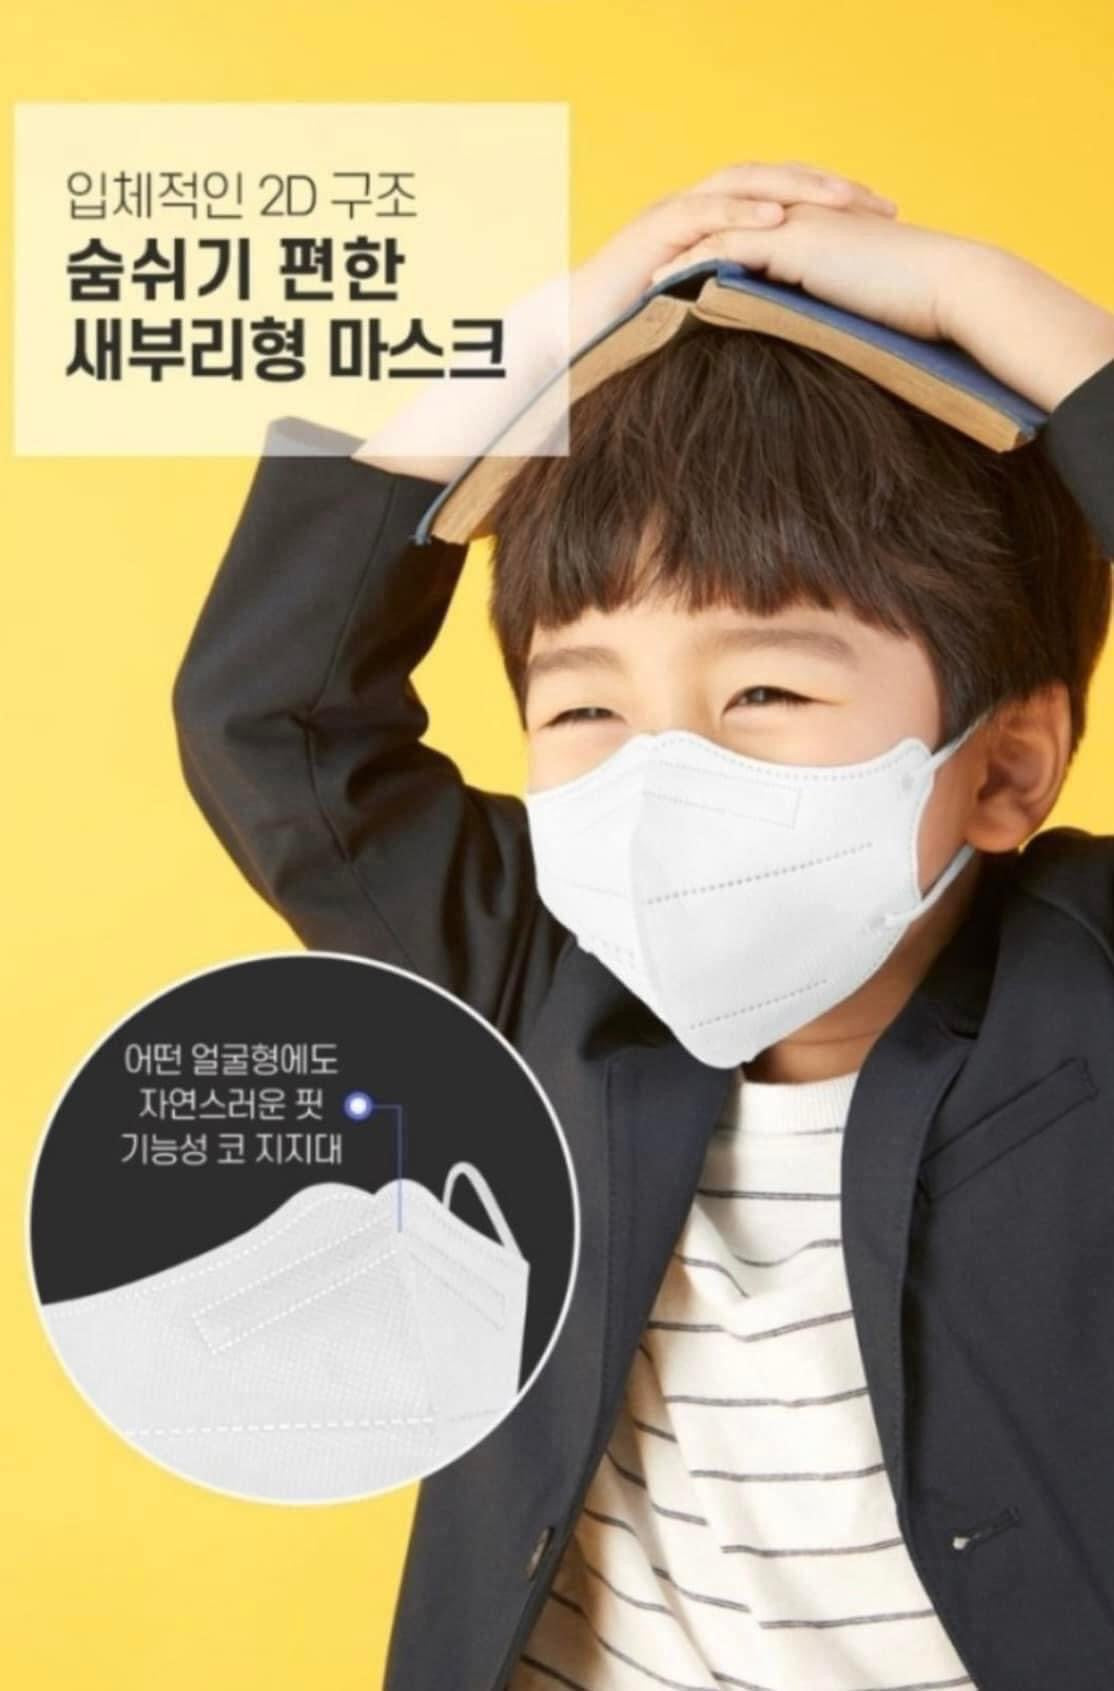 Khẩu trang KF94 Hàn Quốc lọc bụi mịn, kháng khuẩn cho bé 3-5 tuổi (hộp 25 cái)